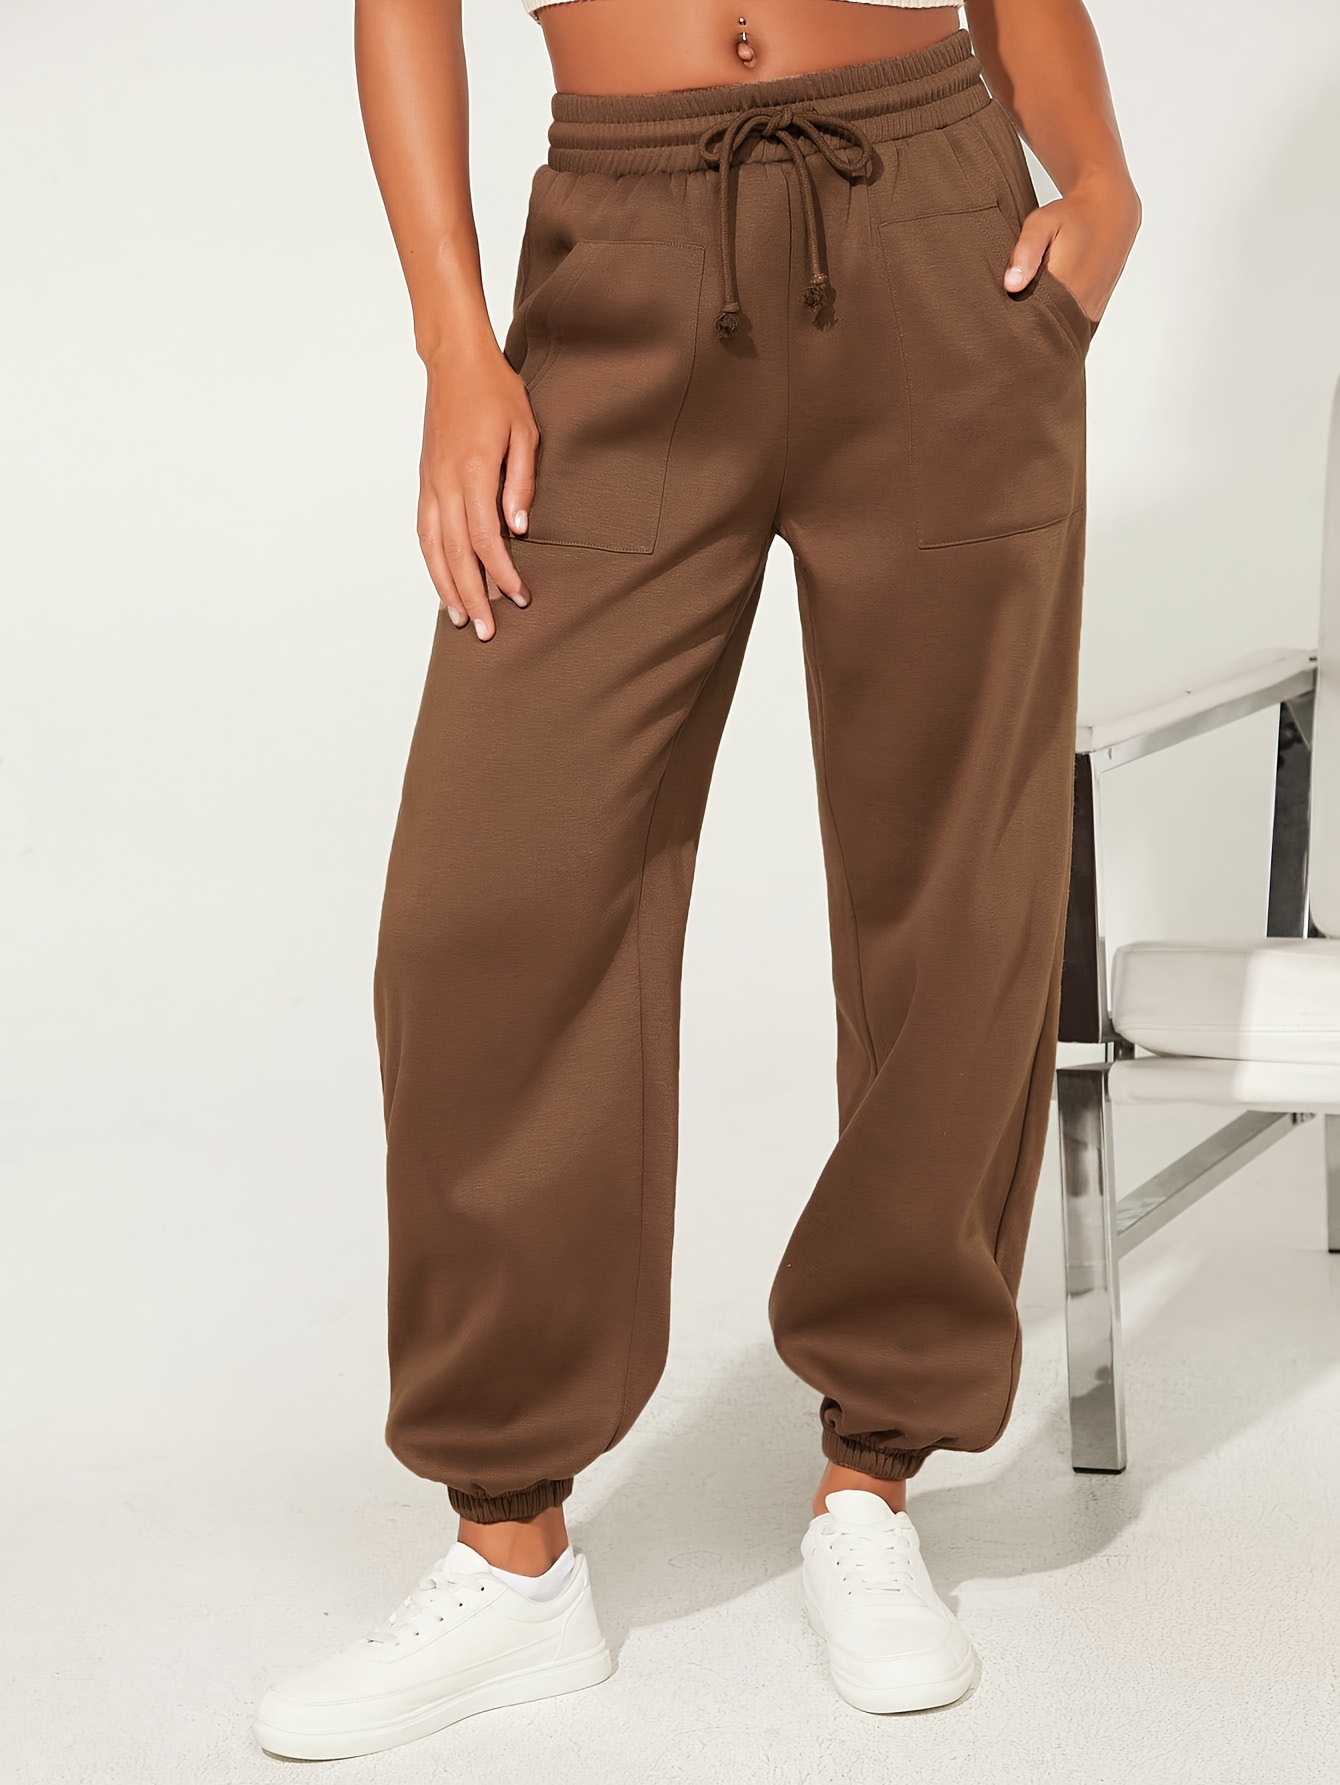 Solid Drawstring Pockets Pants Casual Capri Pants Spring - Temu